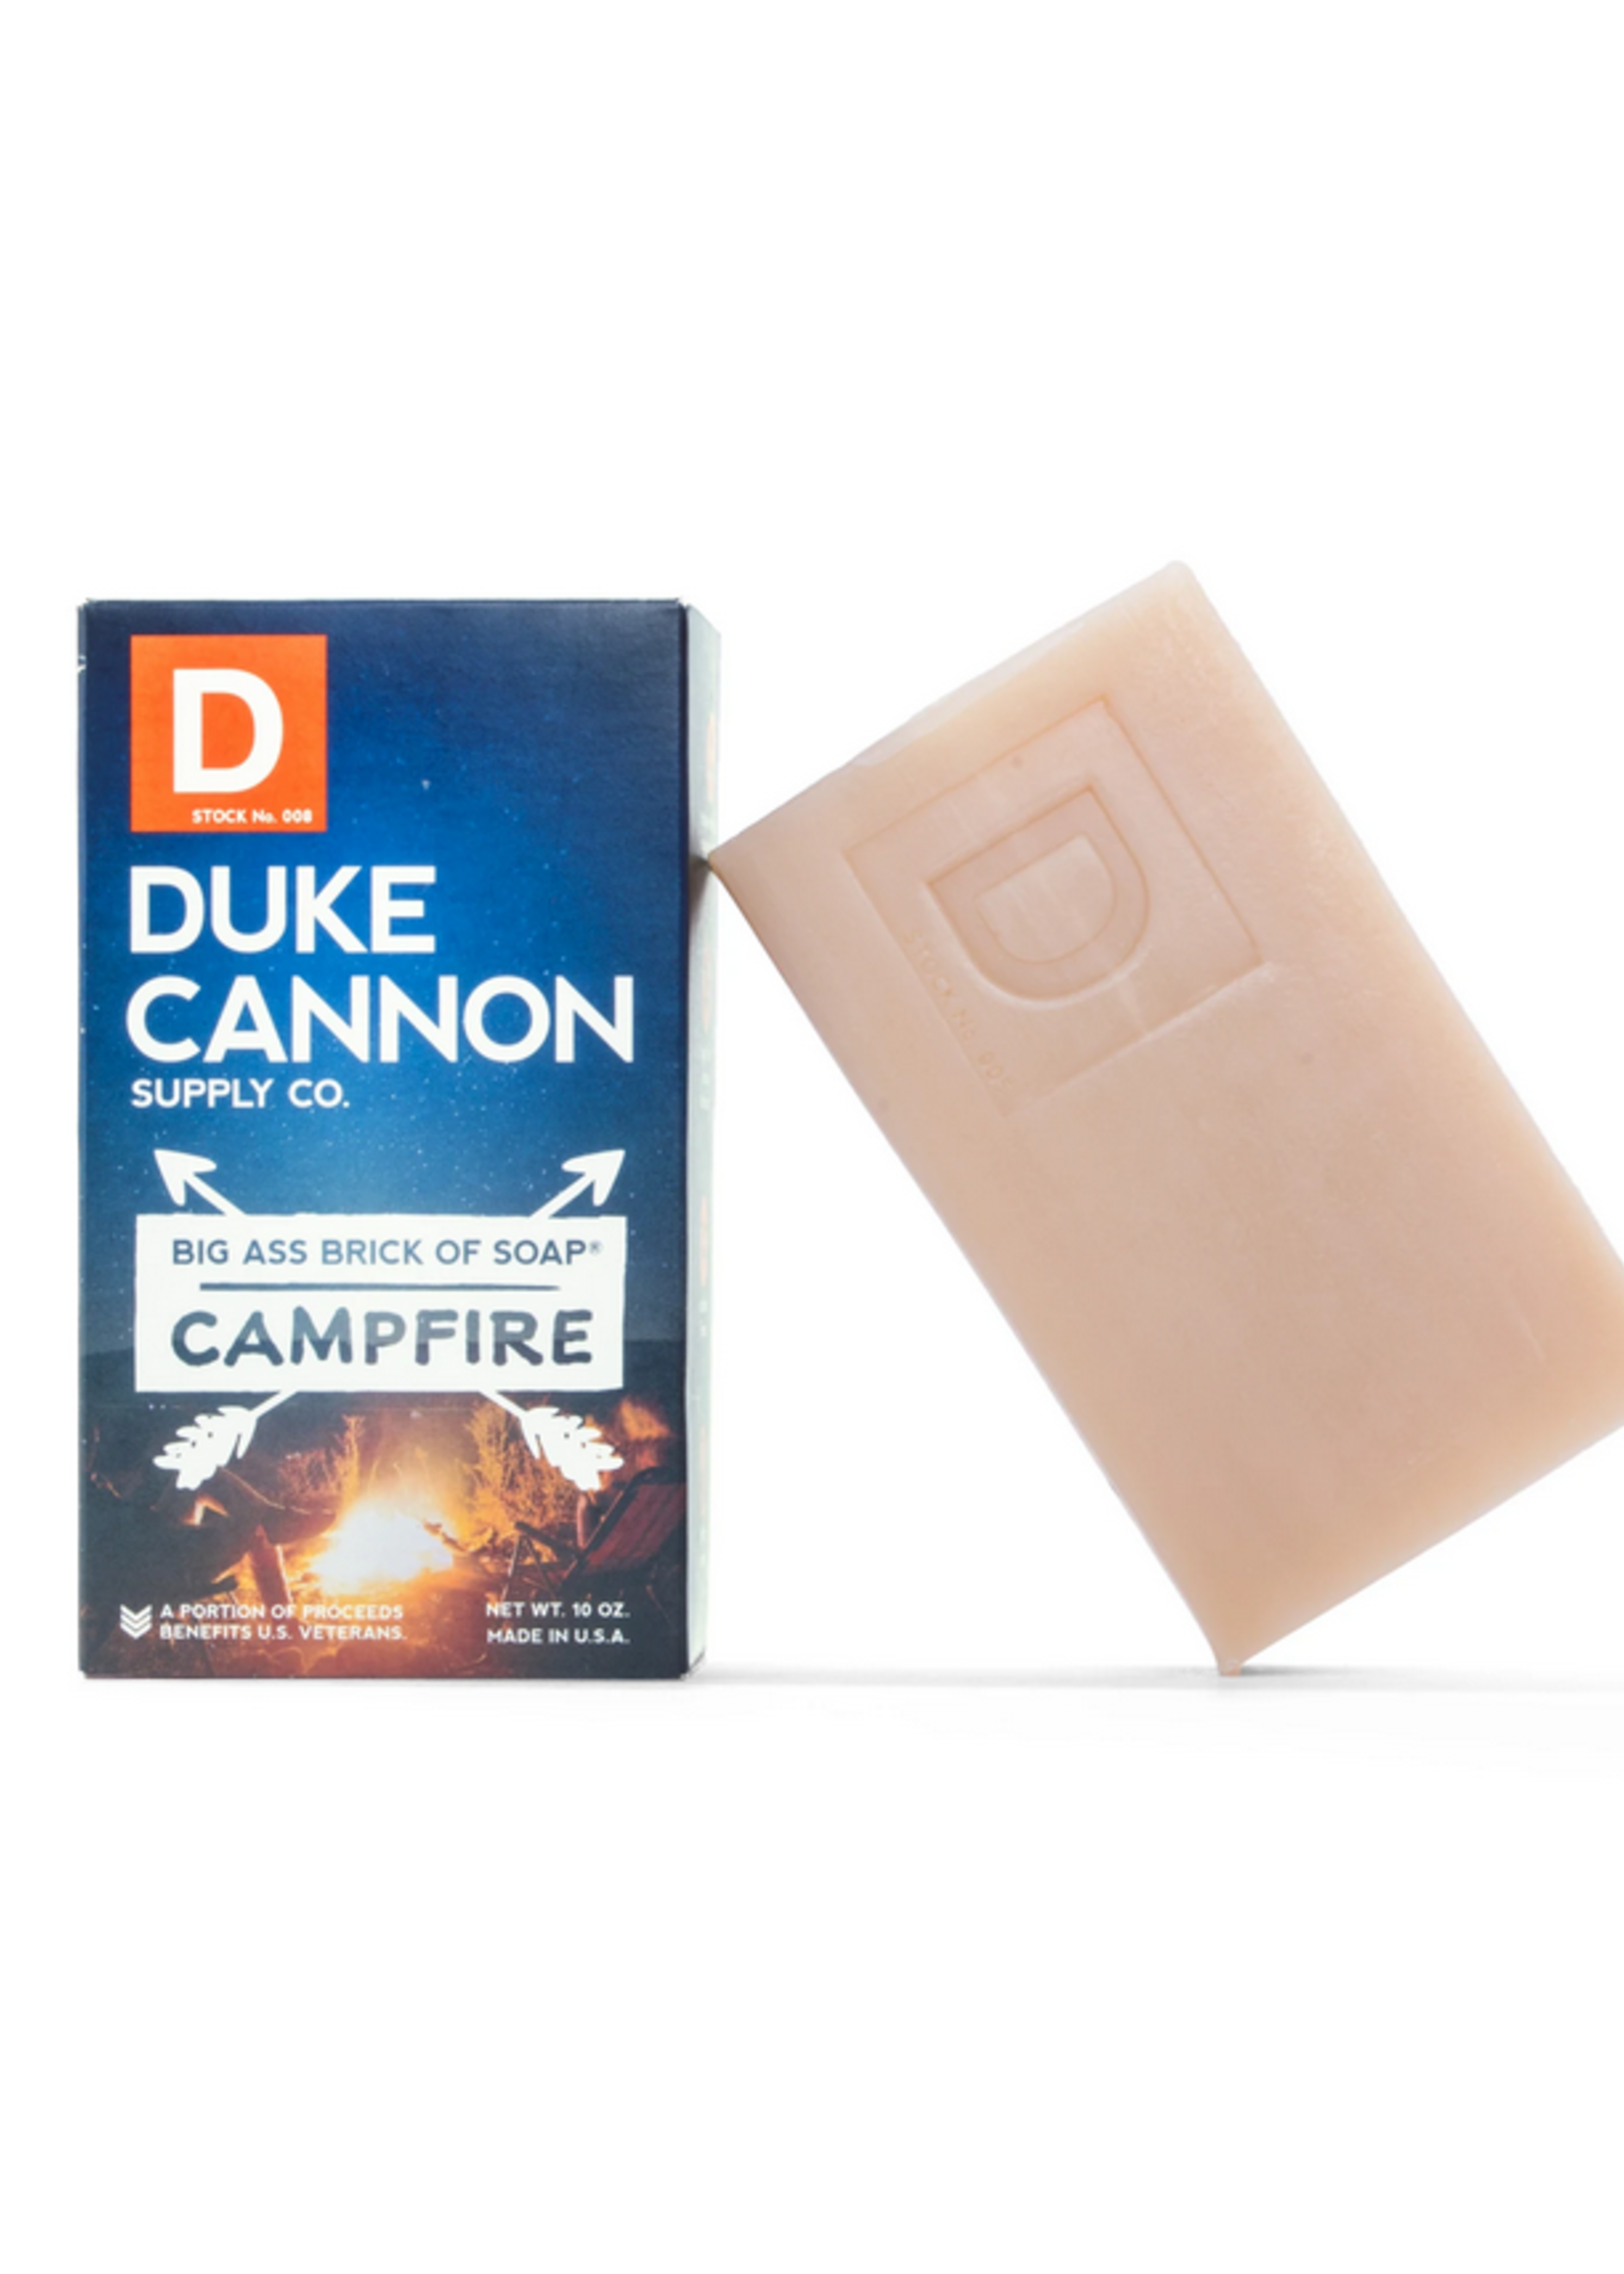 Big A** Brick of Soap - Campfire